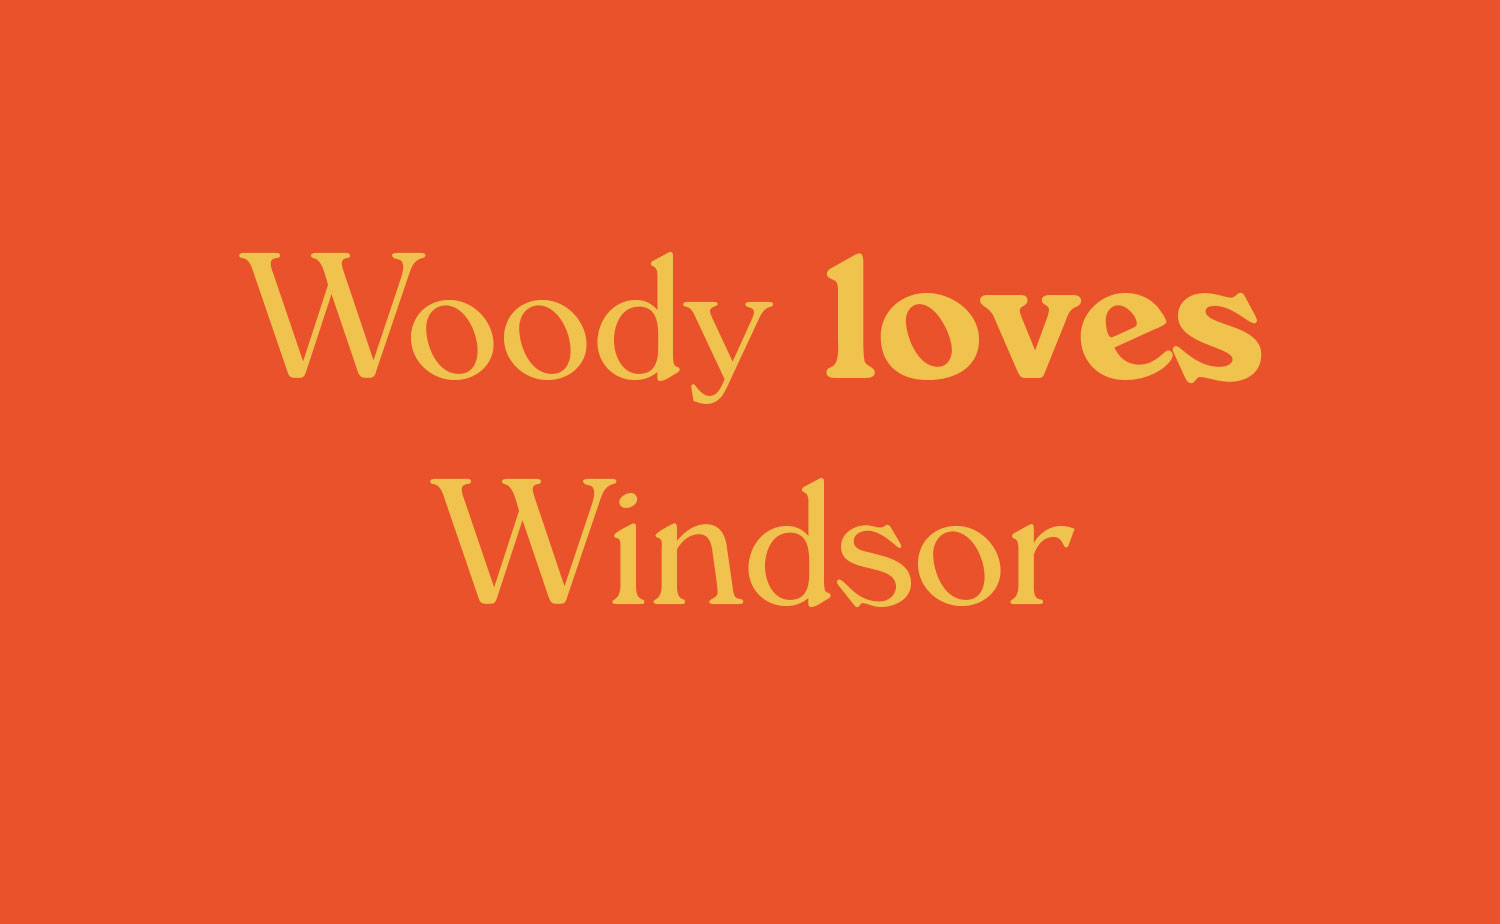 biotypo windsor woody allen